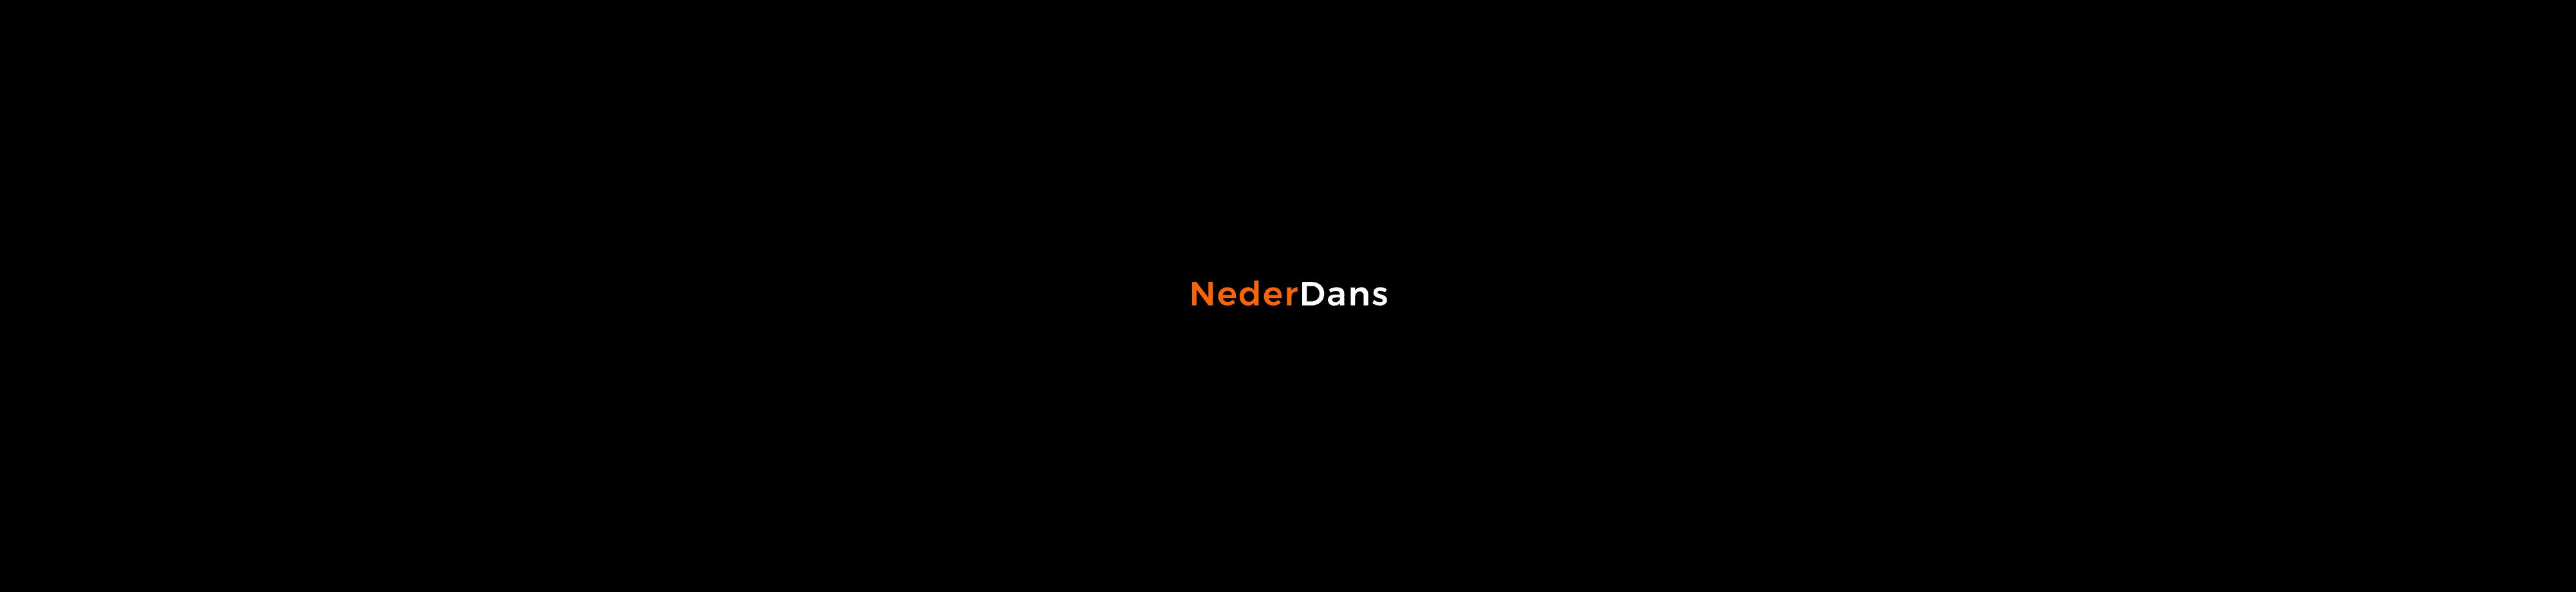 NederDans banner